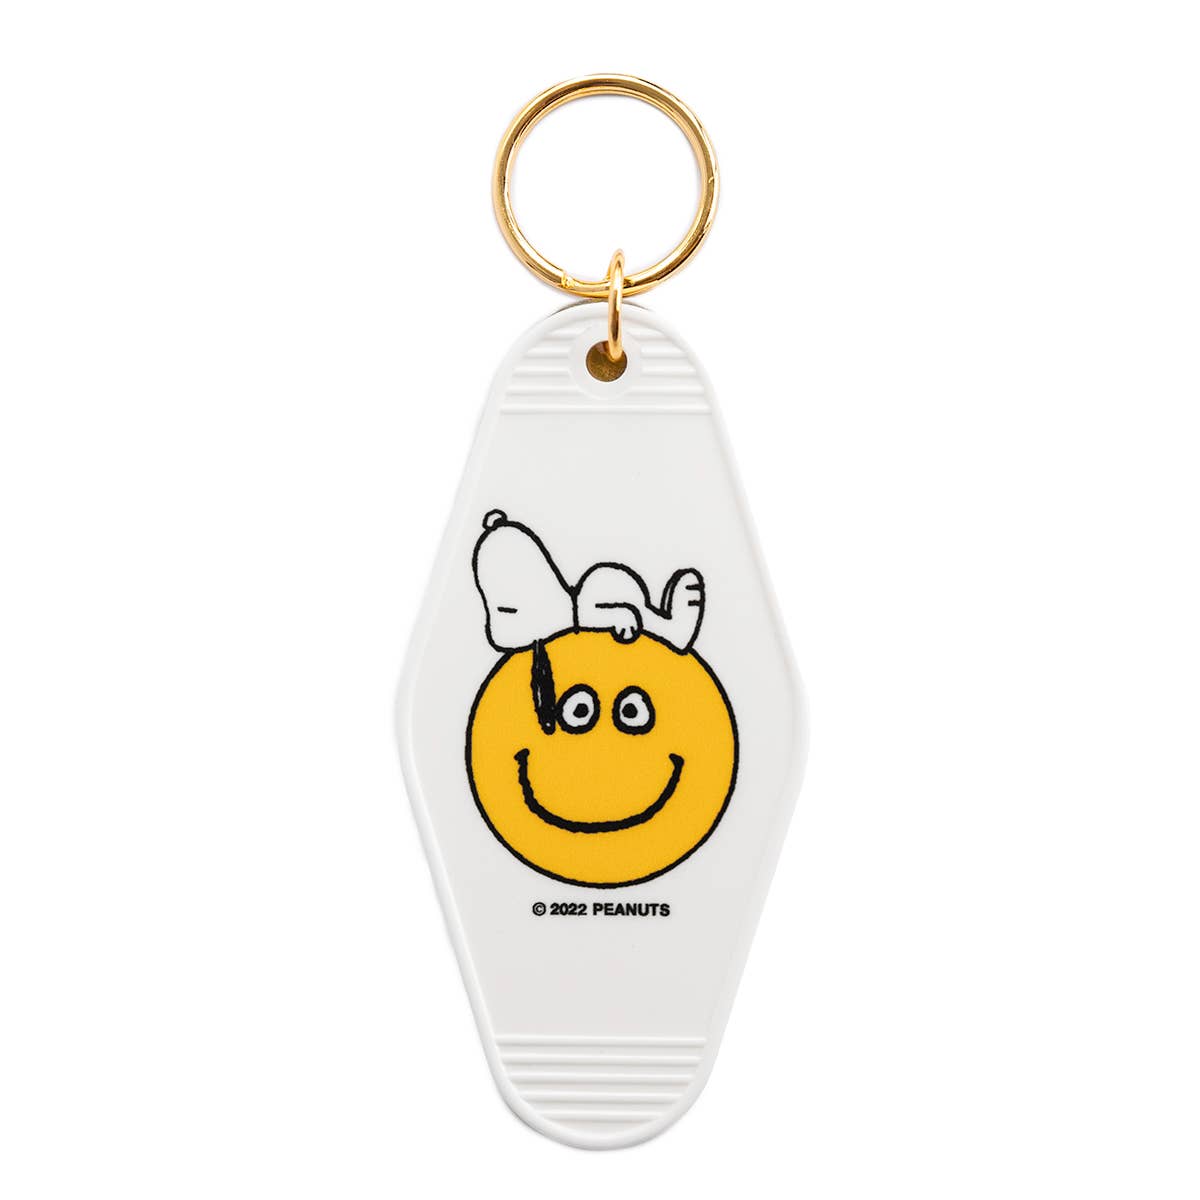 Snoopy Smiley Motel Keychain